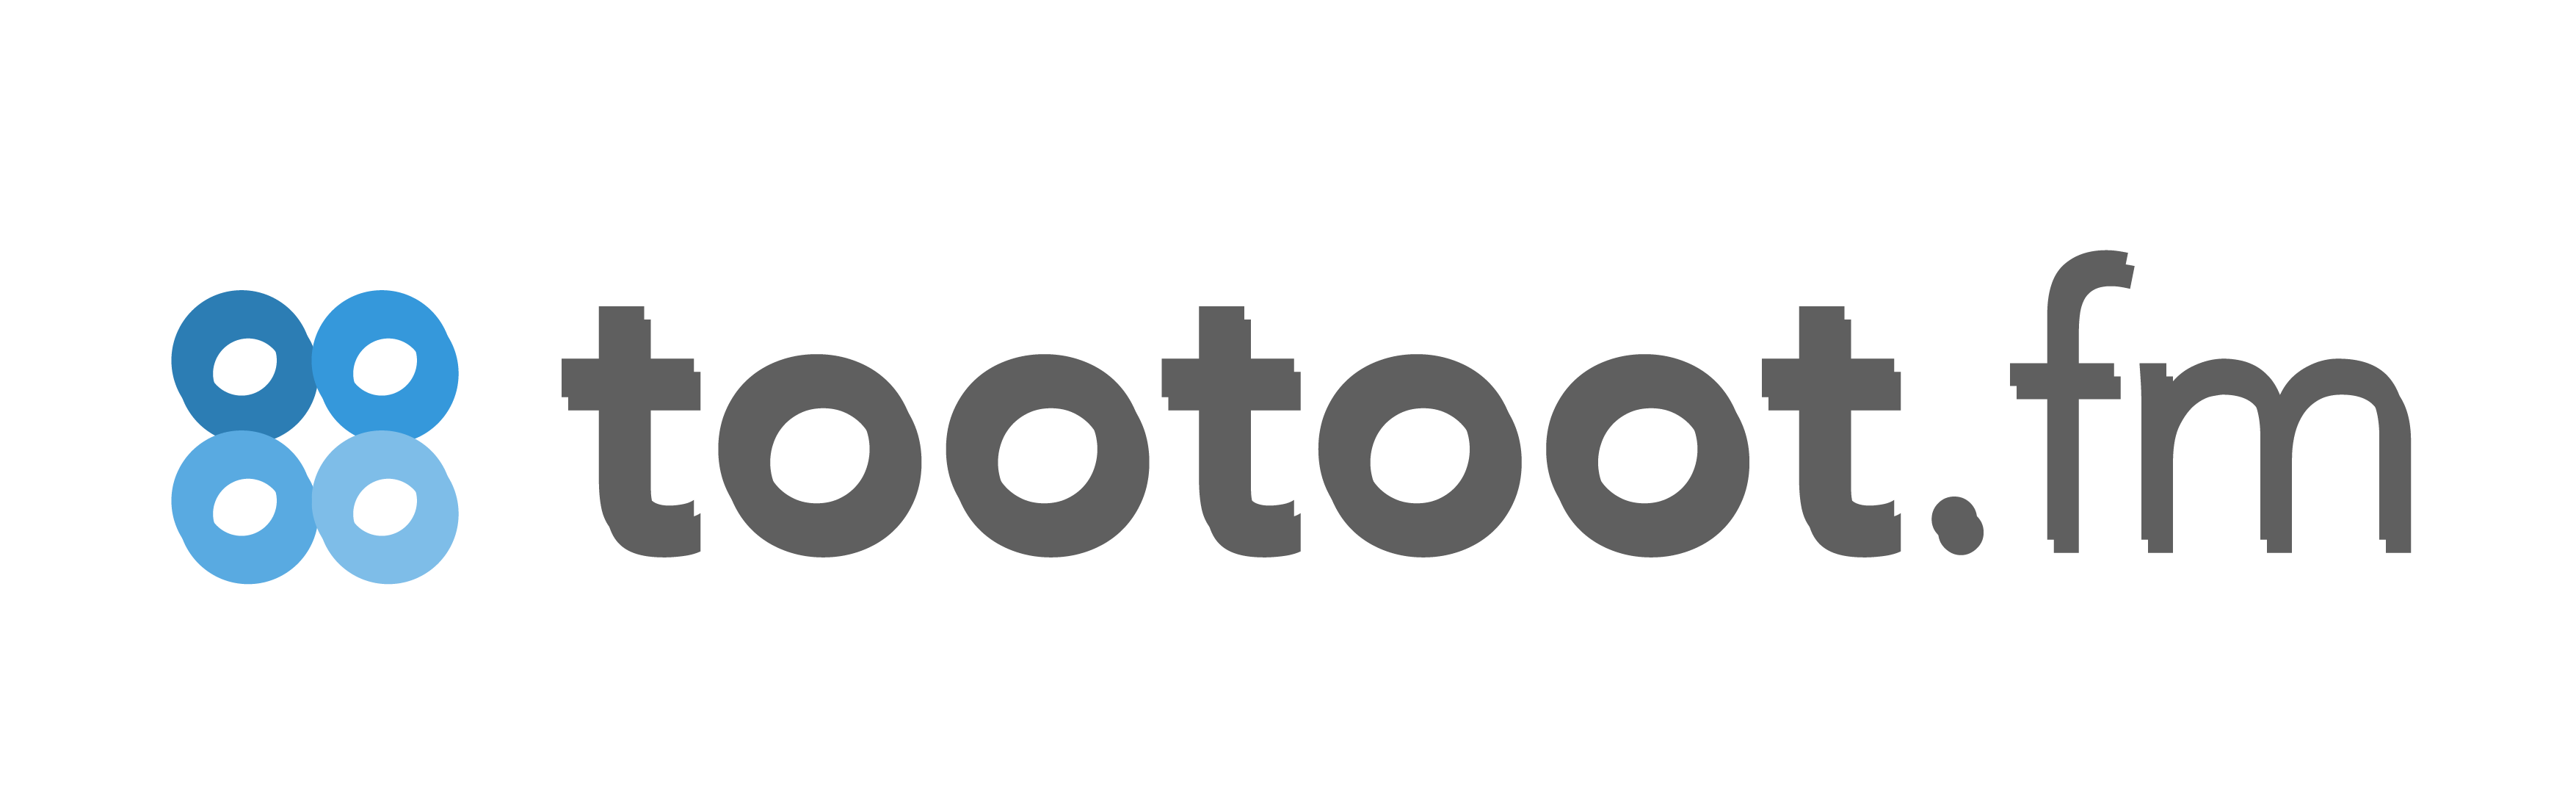 Tootoot